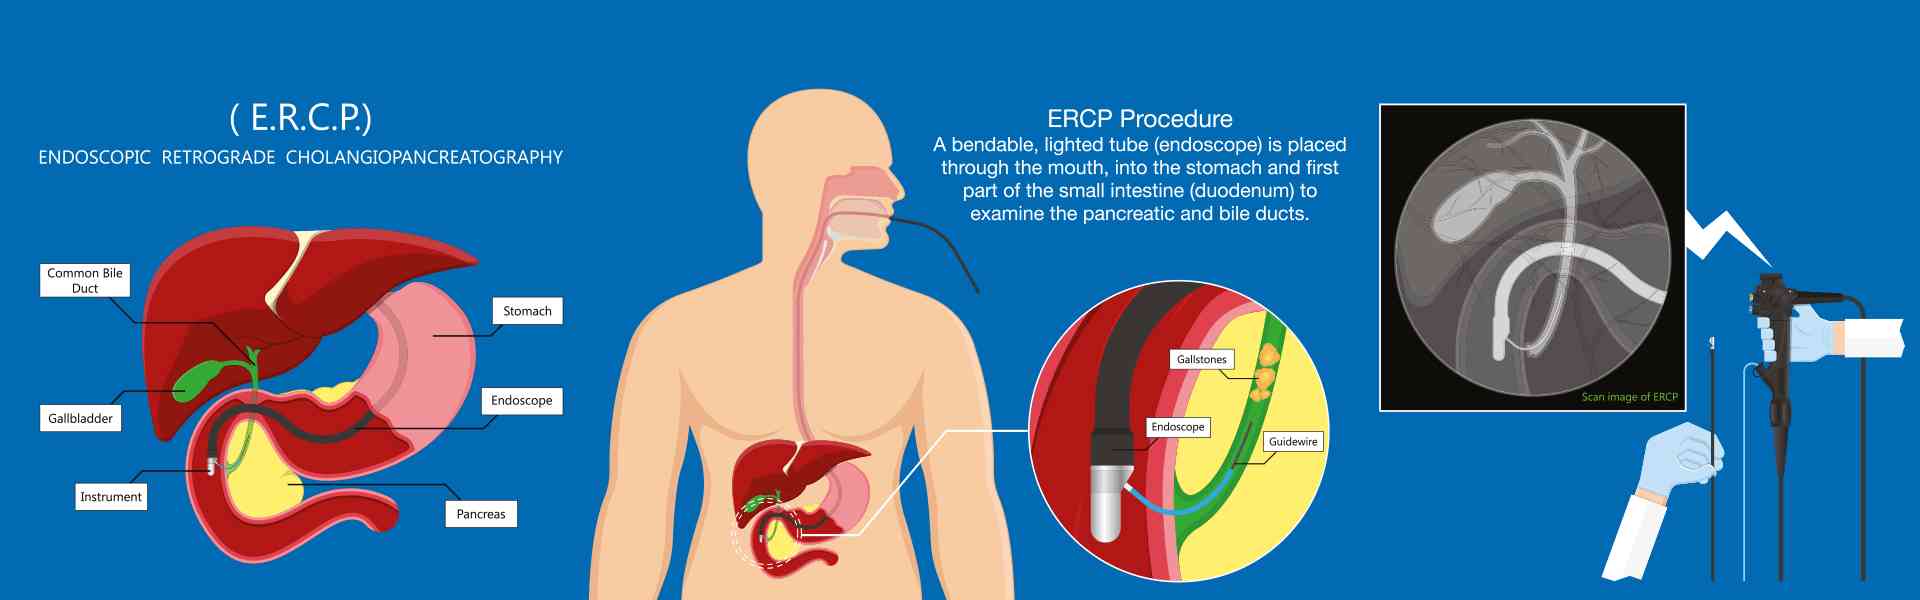 ERCP Procedure in Ghaziabad